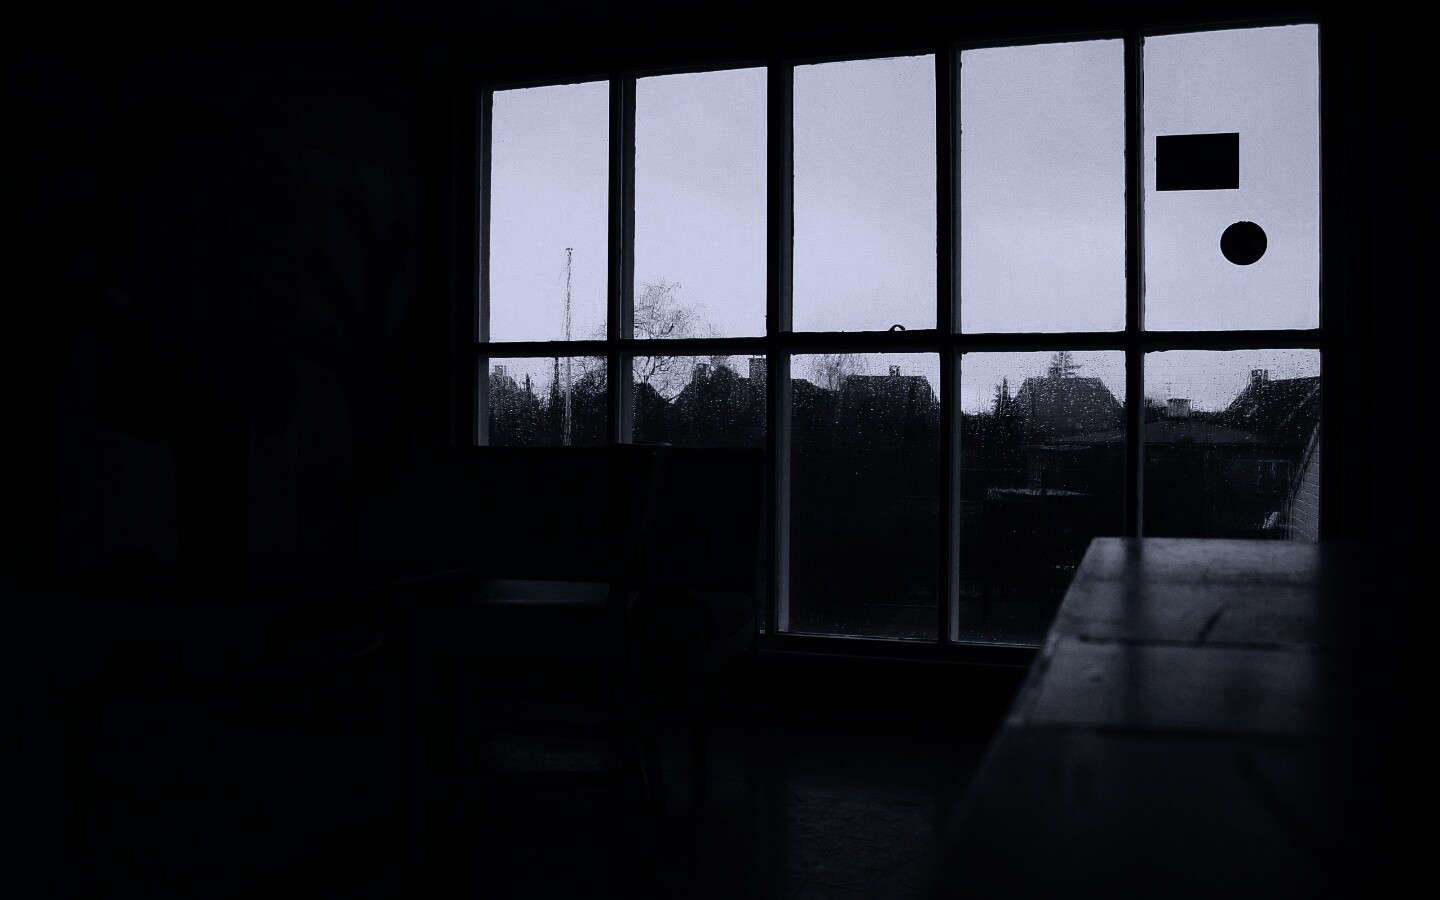 Тёмная комната и дождь за окном обои